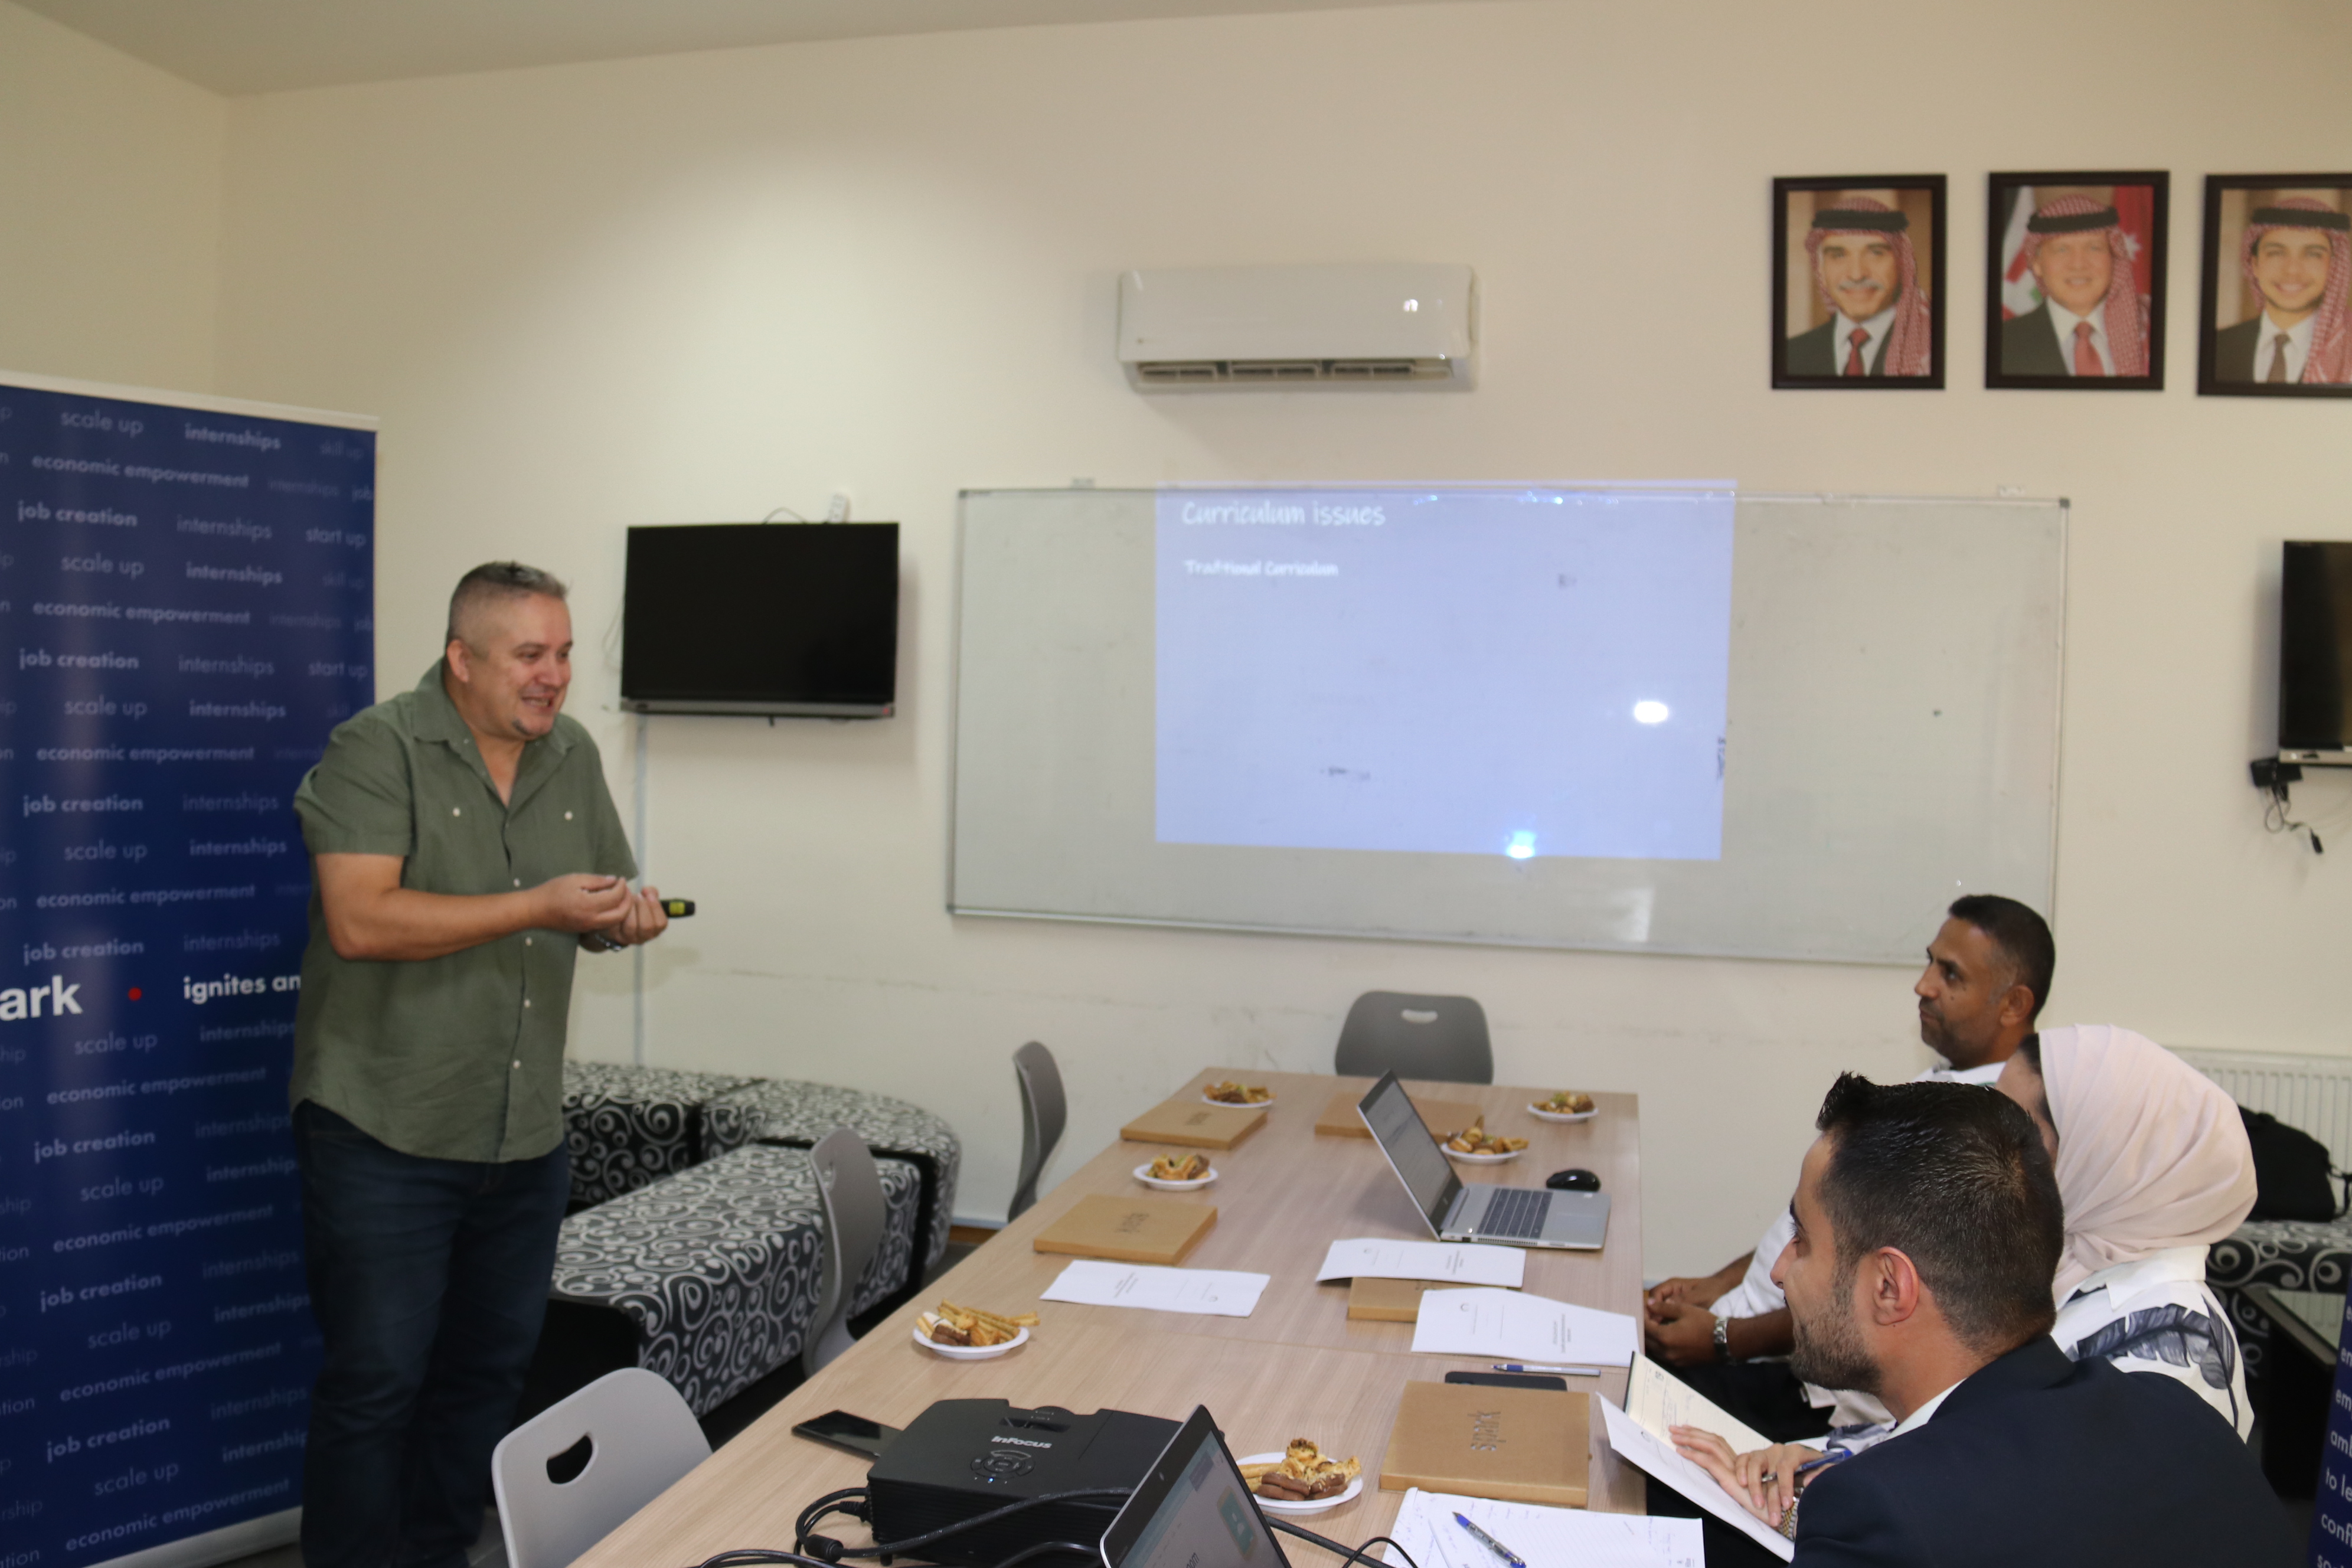 برنامج تدريبي مشترك بين "عمان العربية" ومنظمة سبارك العالمية3